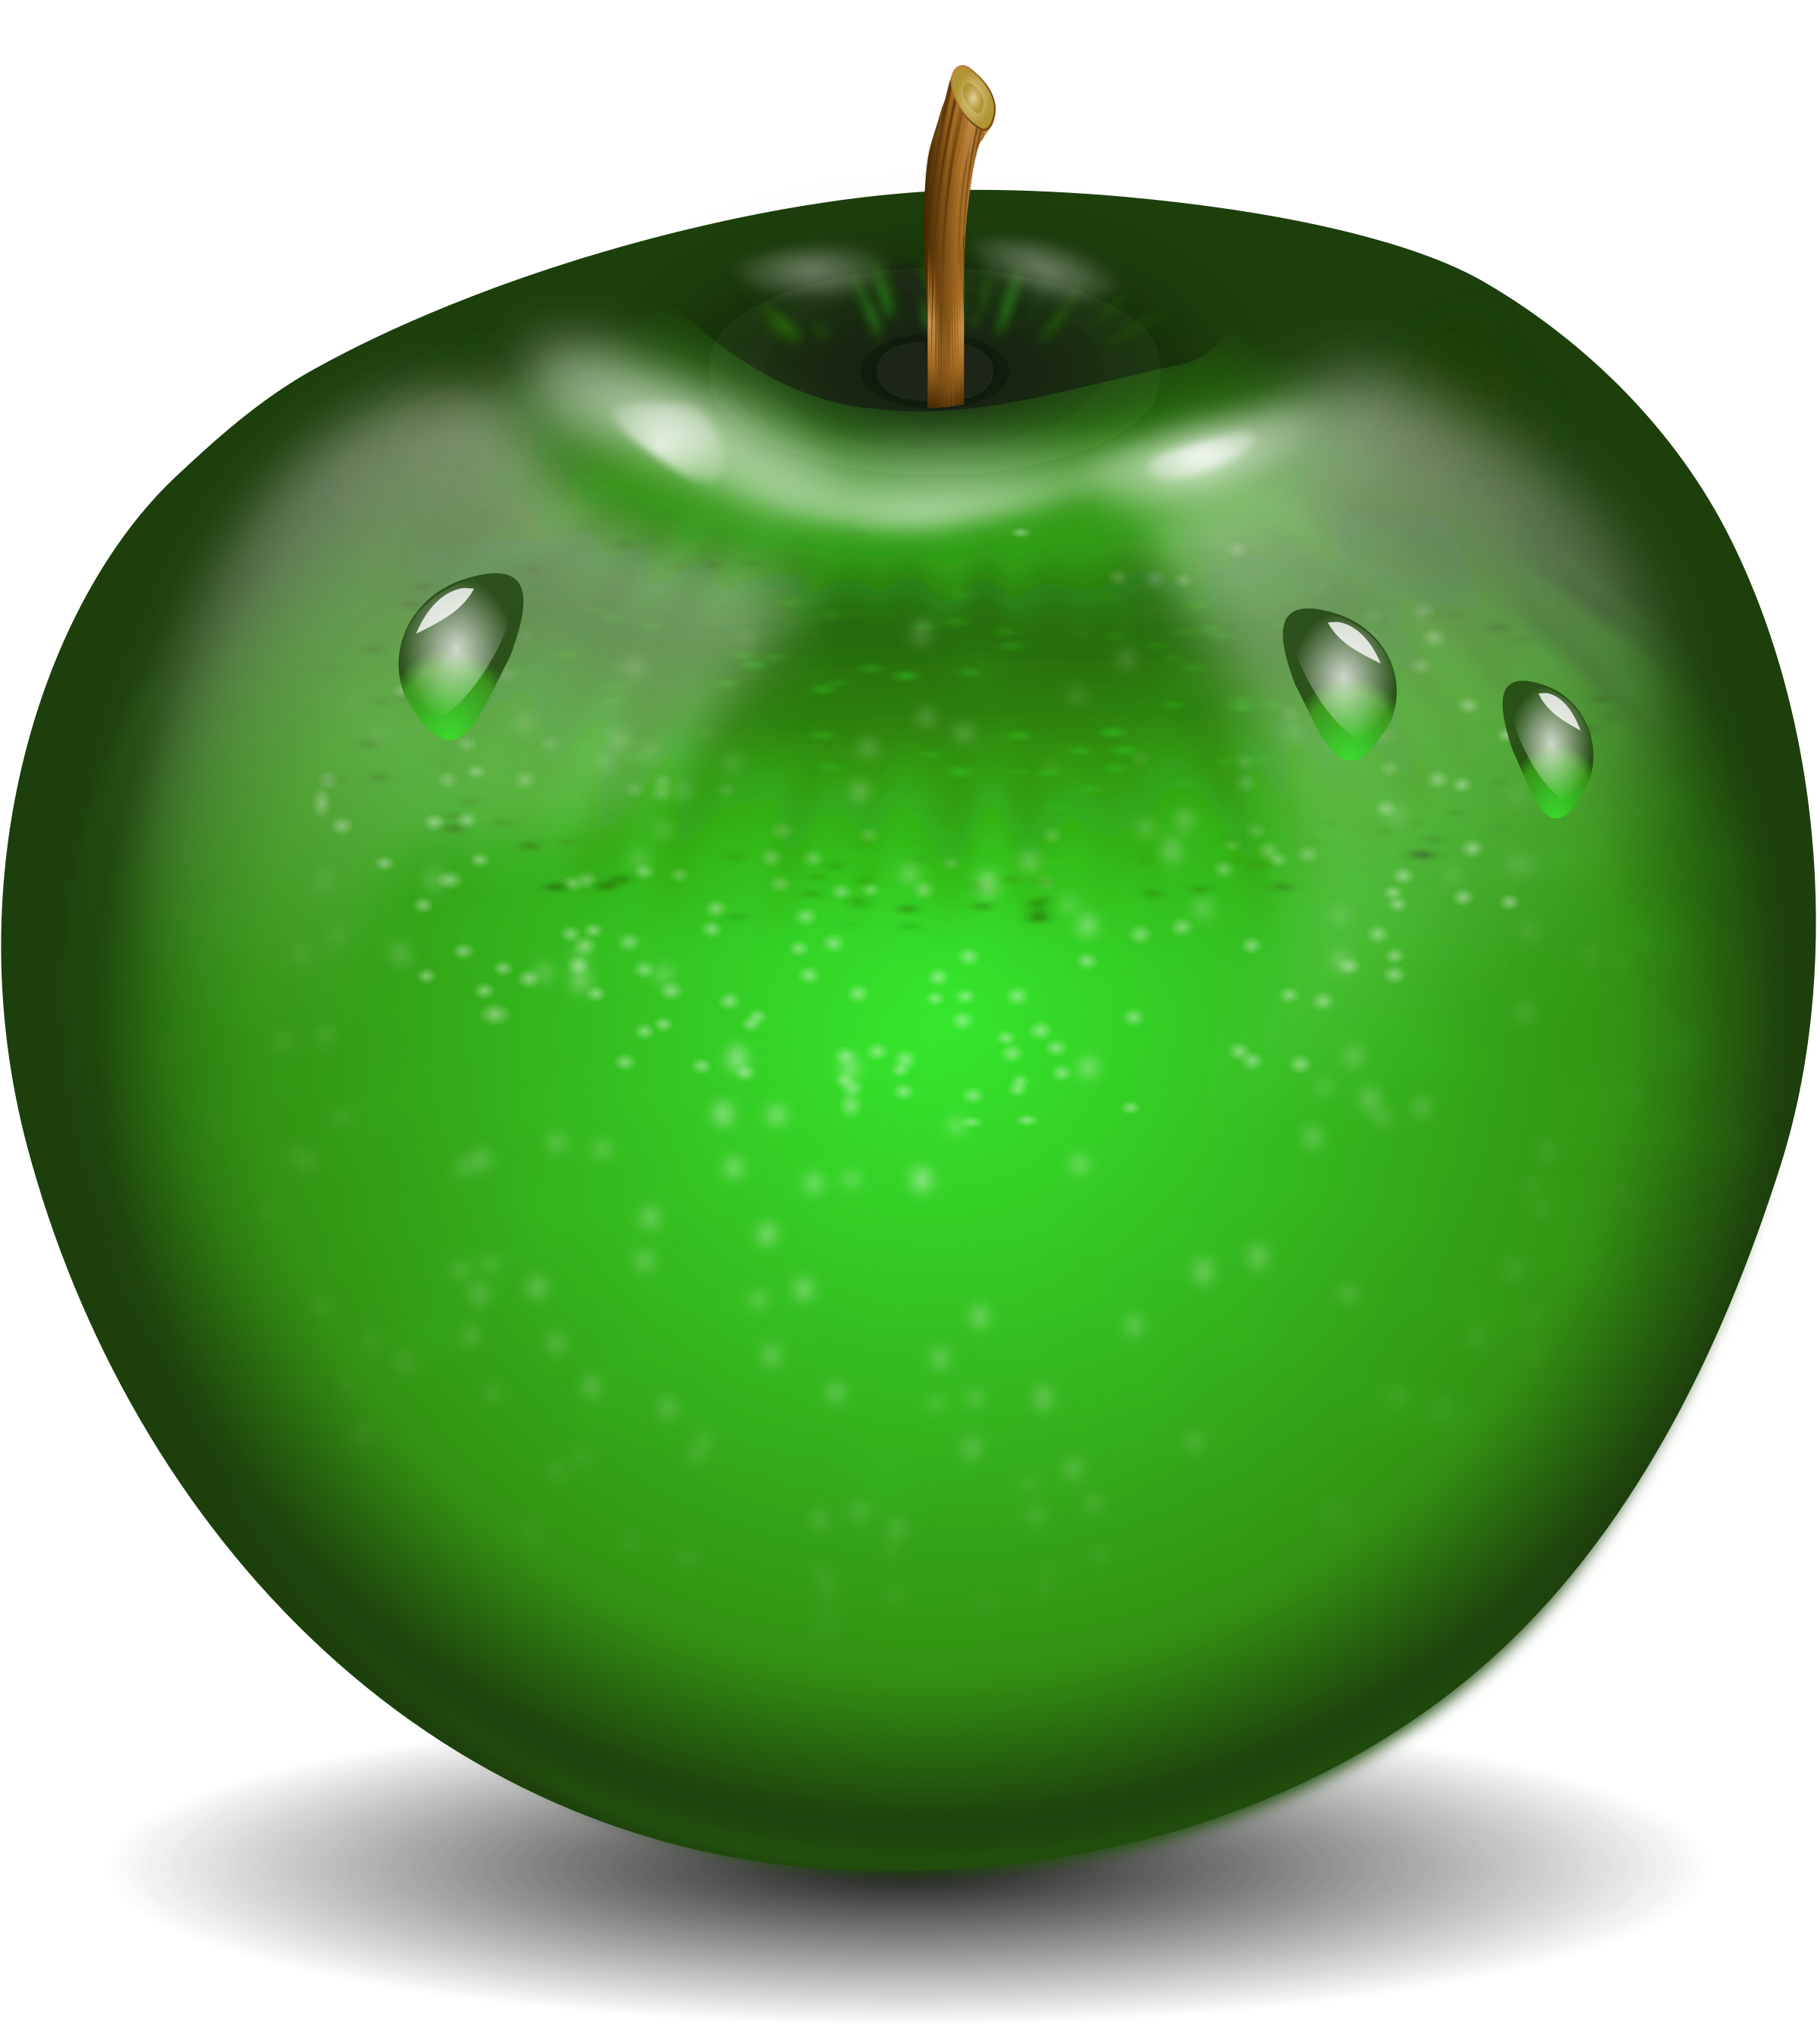 Zielone jabłko z kroplami wody